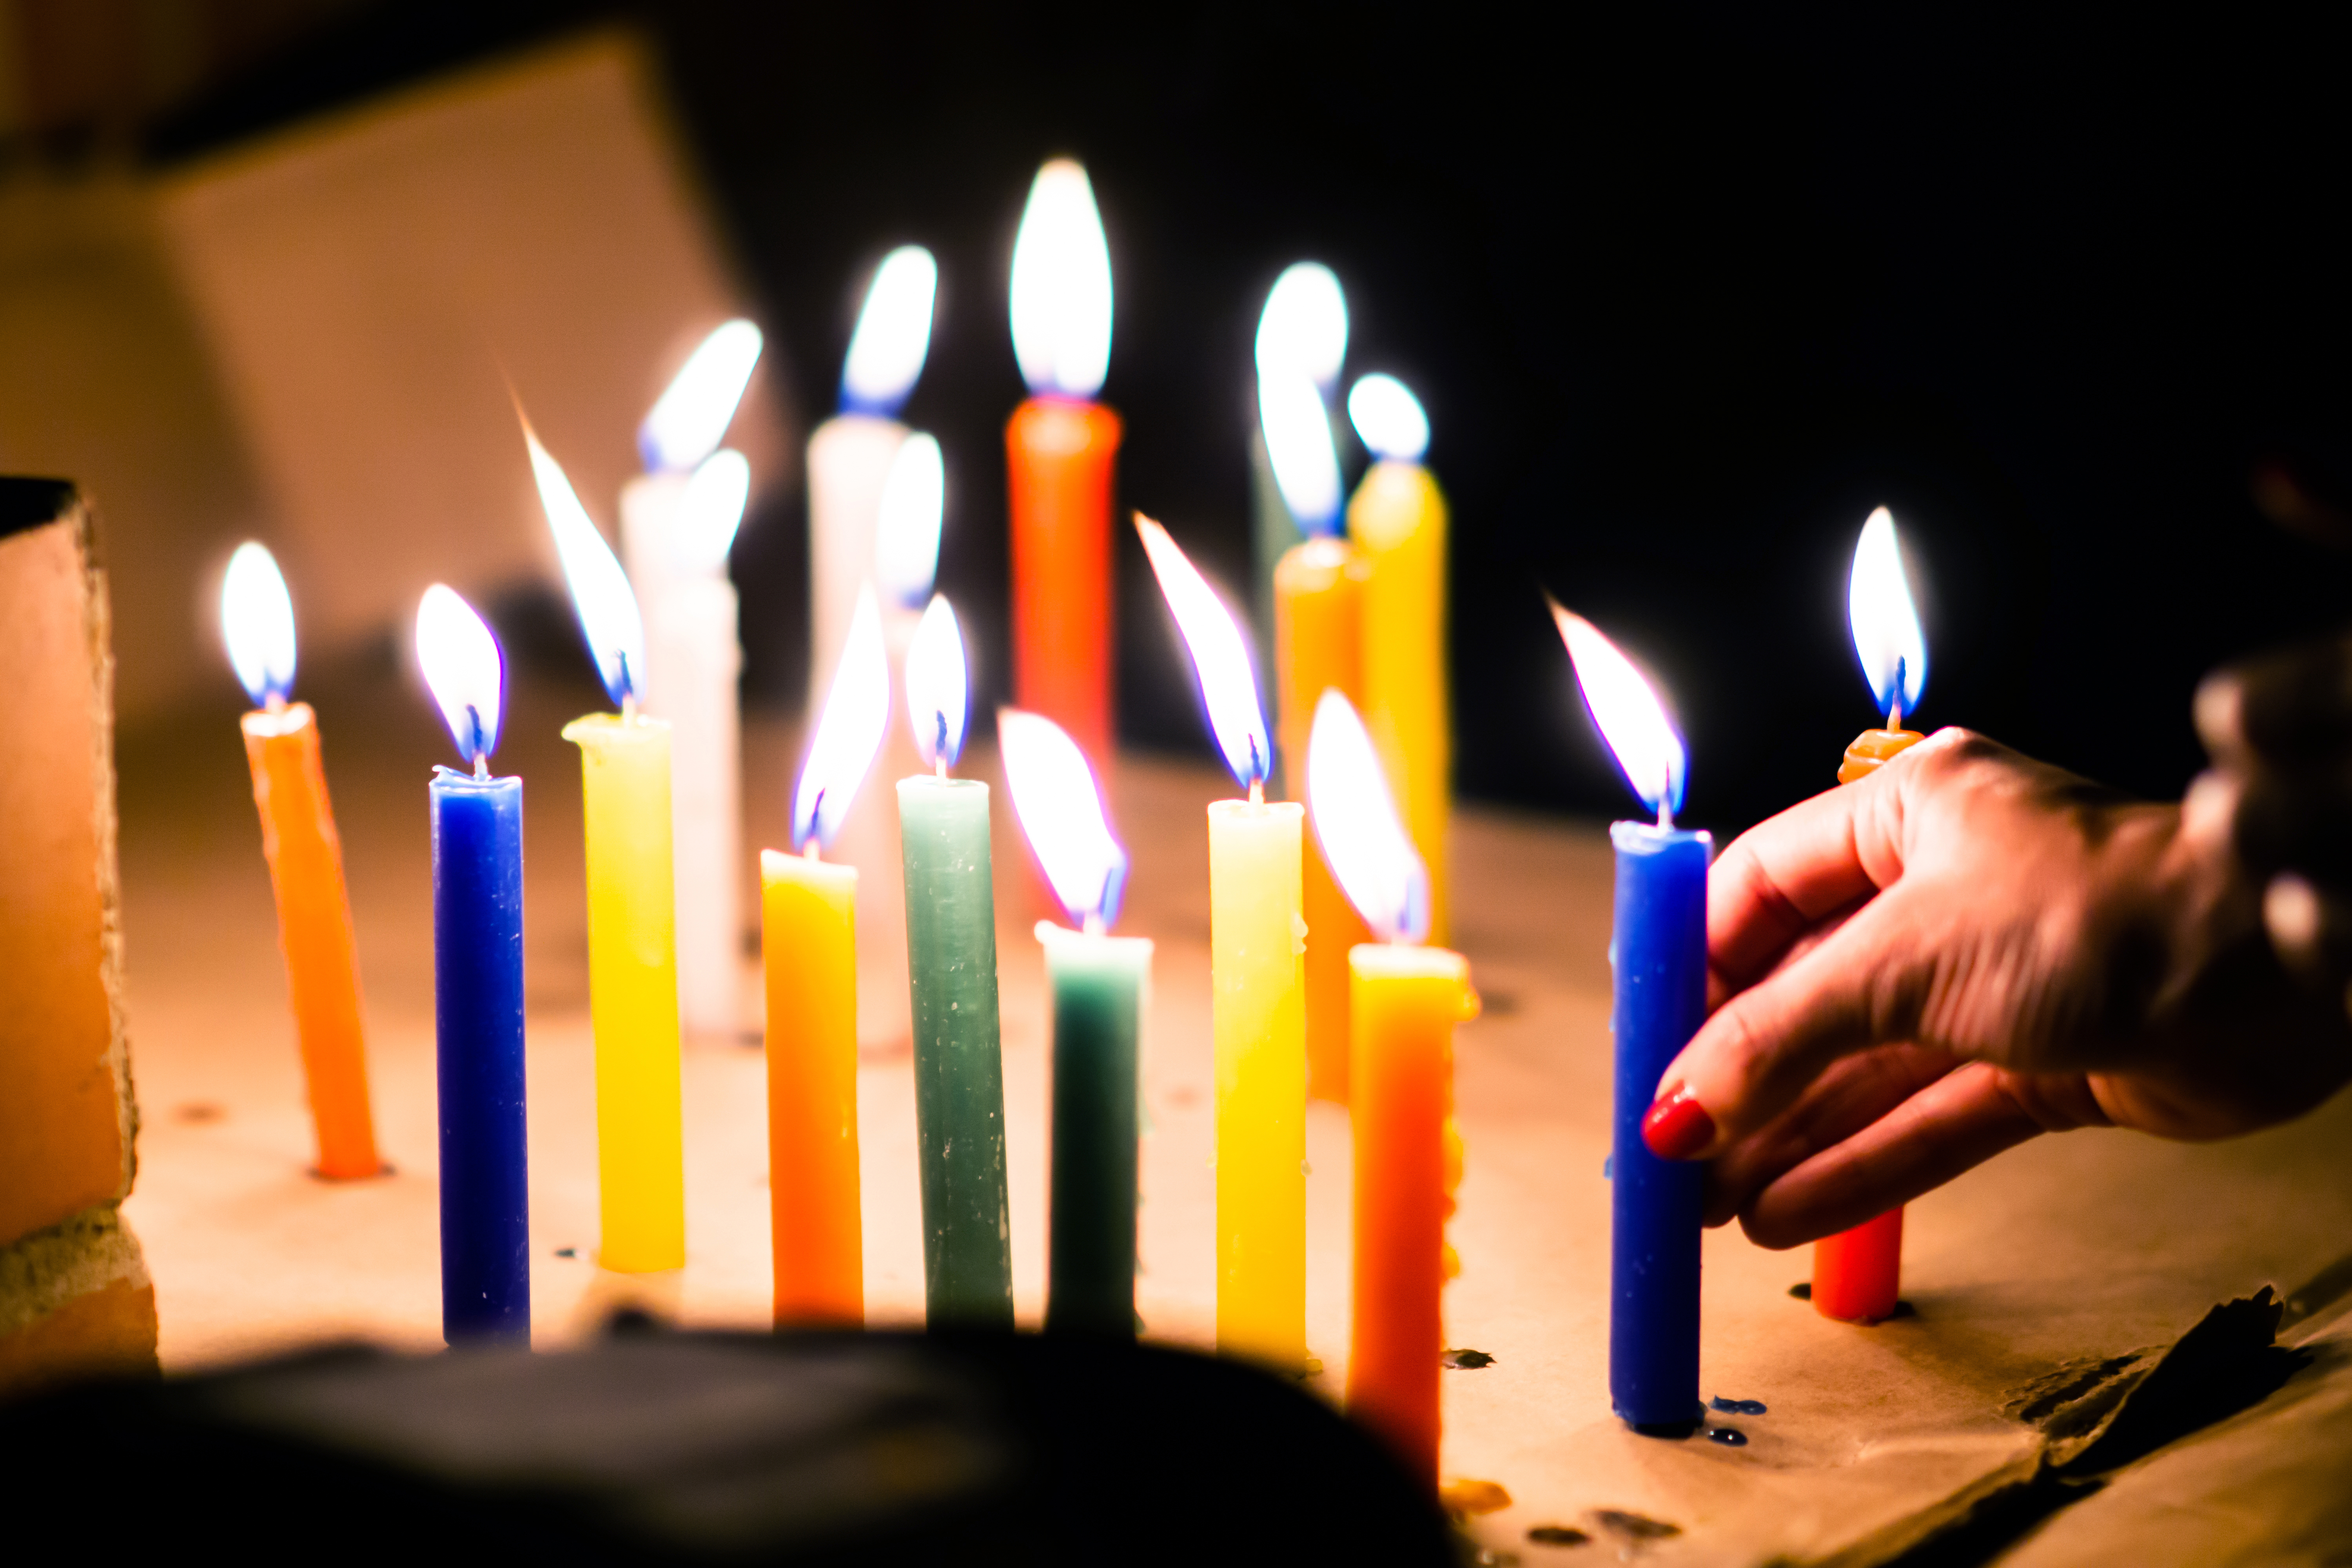 Por qué celebramos los cumpleaños con torta y prendemos velas?